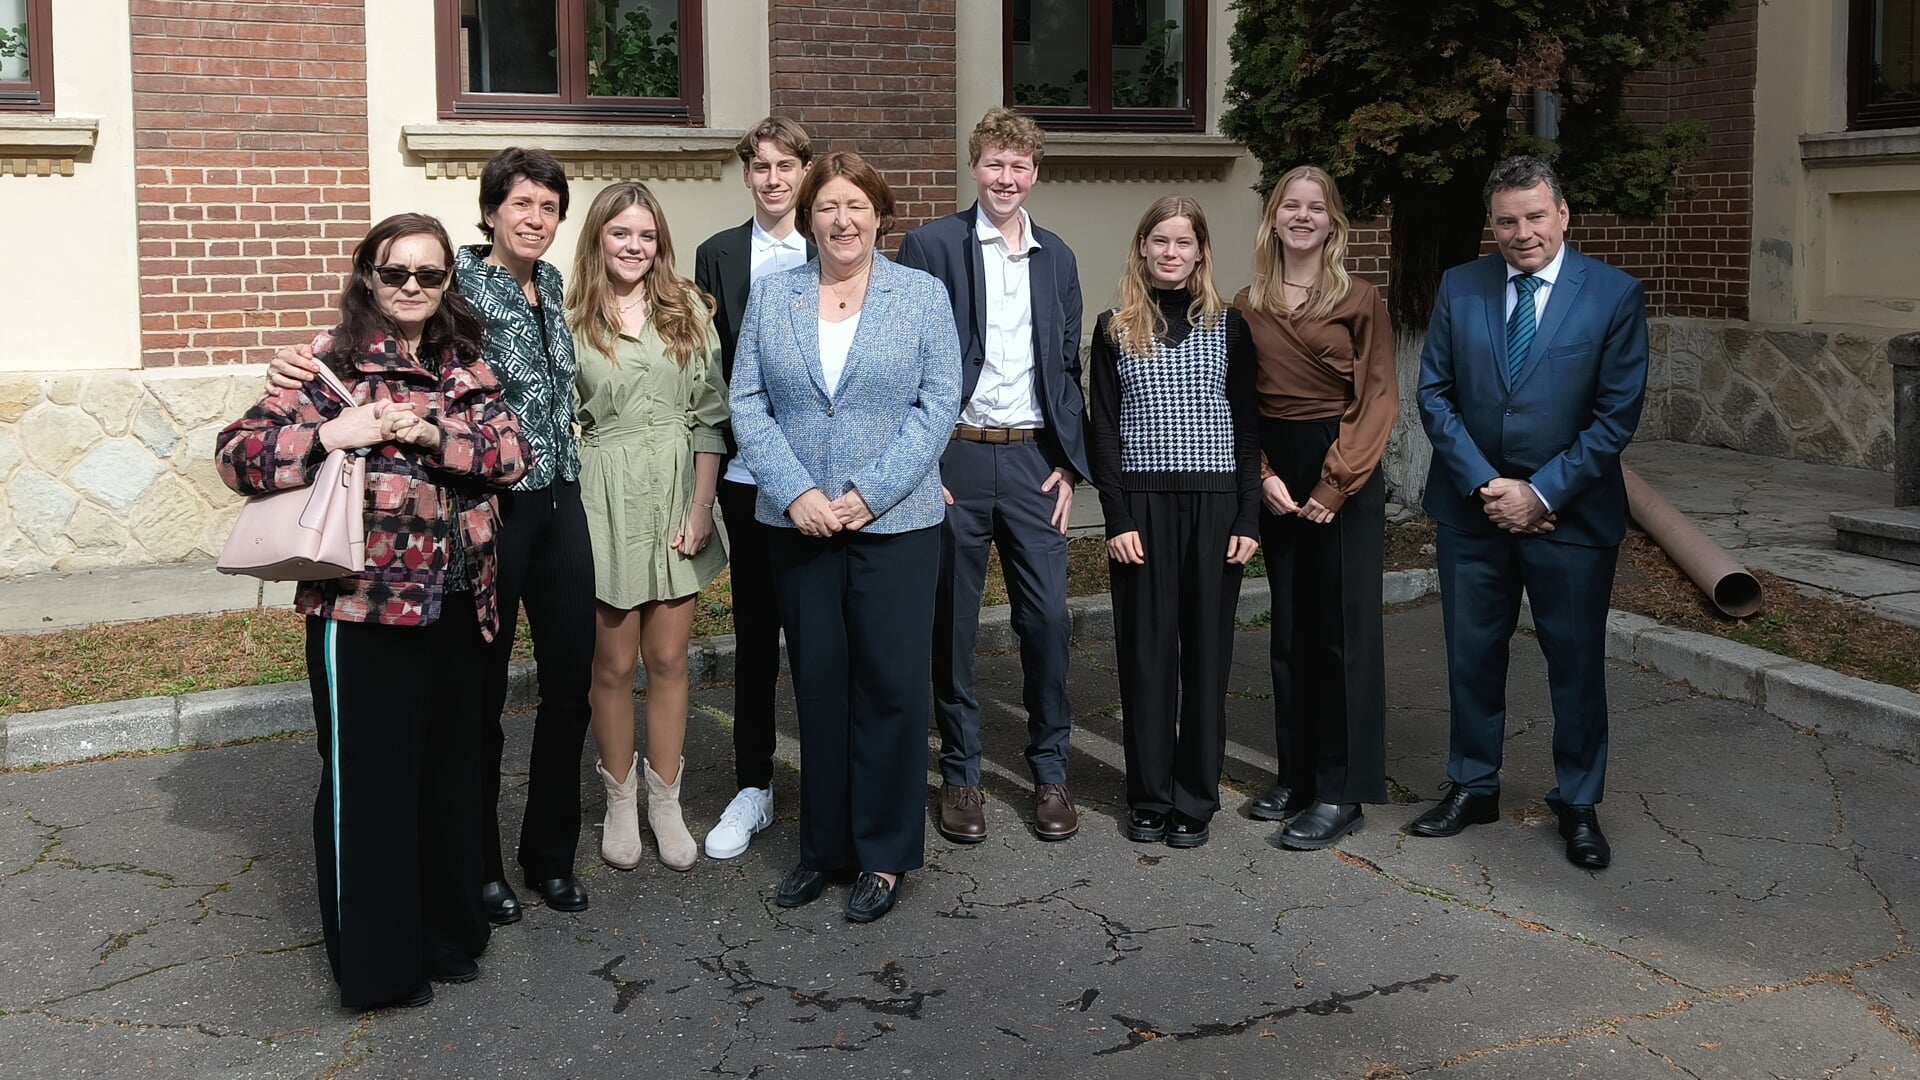 • De leerlingen van het Altena College, samen met de Nederlandse ambassadeur Willemijn van Haaften.